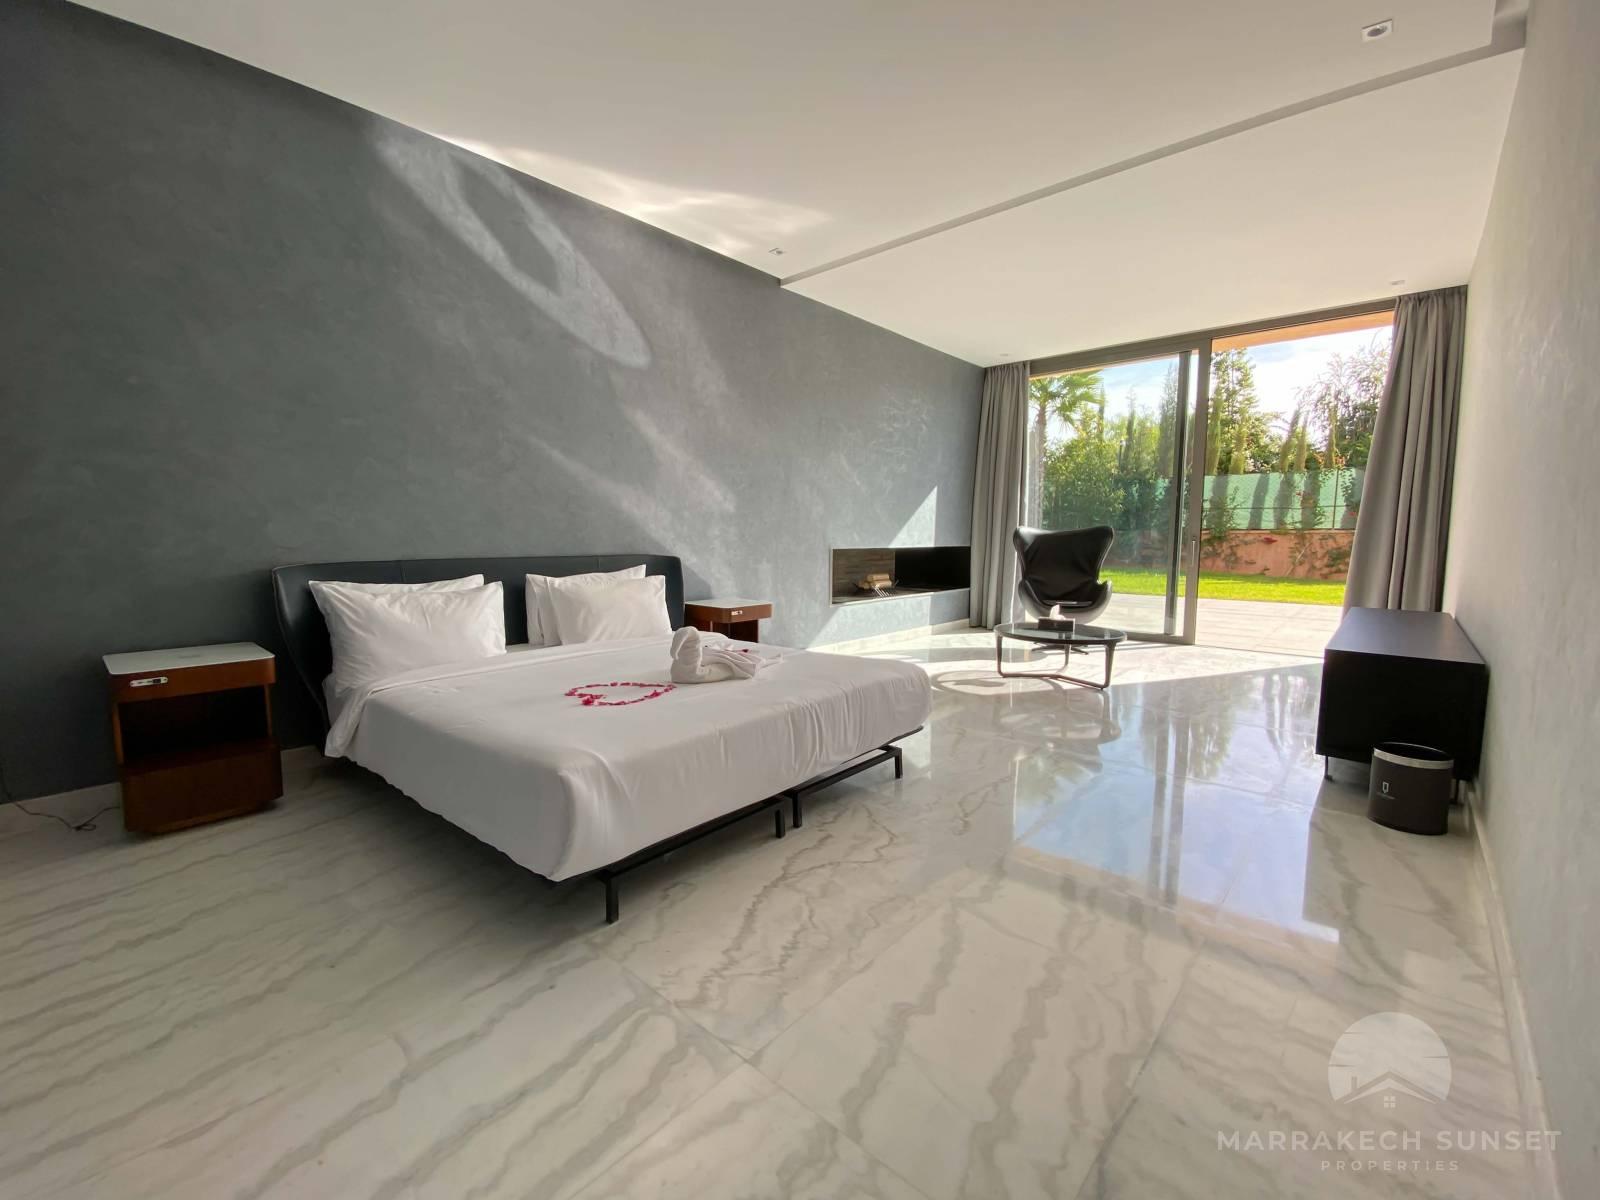 Villa de luxe a vendre a Marrakech de 5 chambres dans un domaine privé